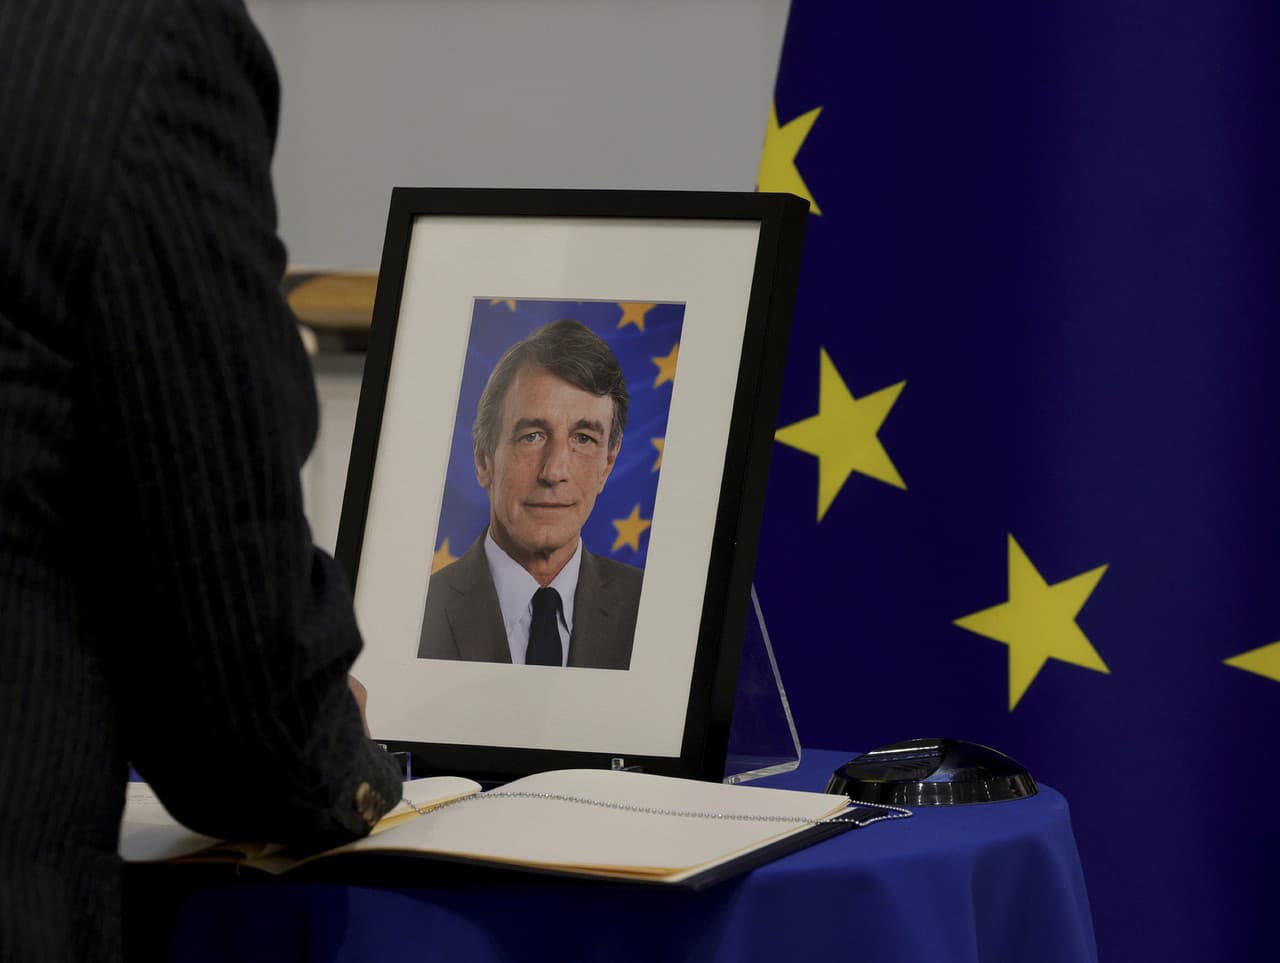 Zomrel doterajší predseda EP David Sassoli